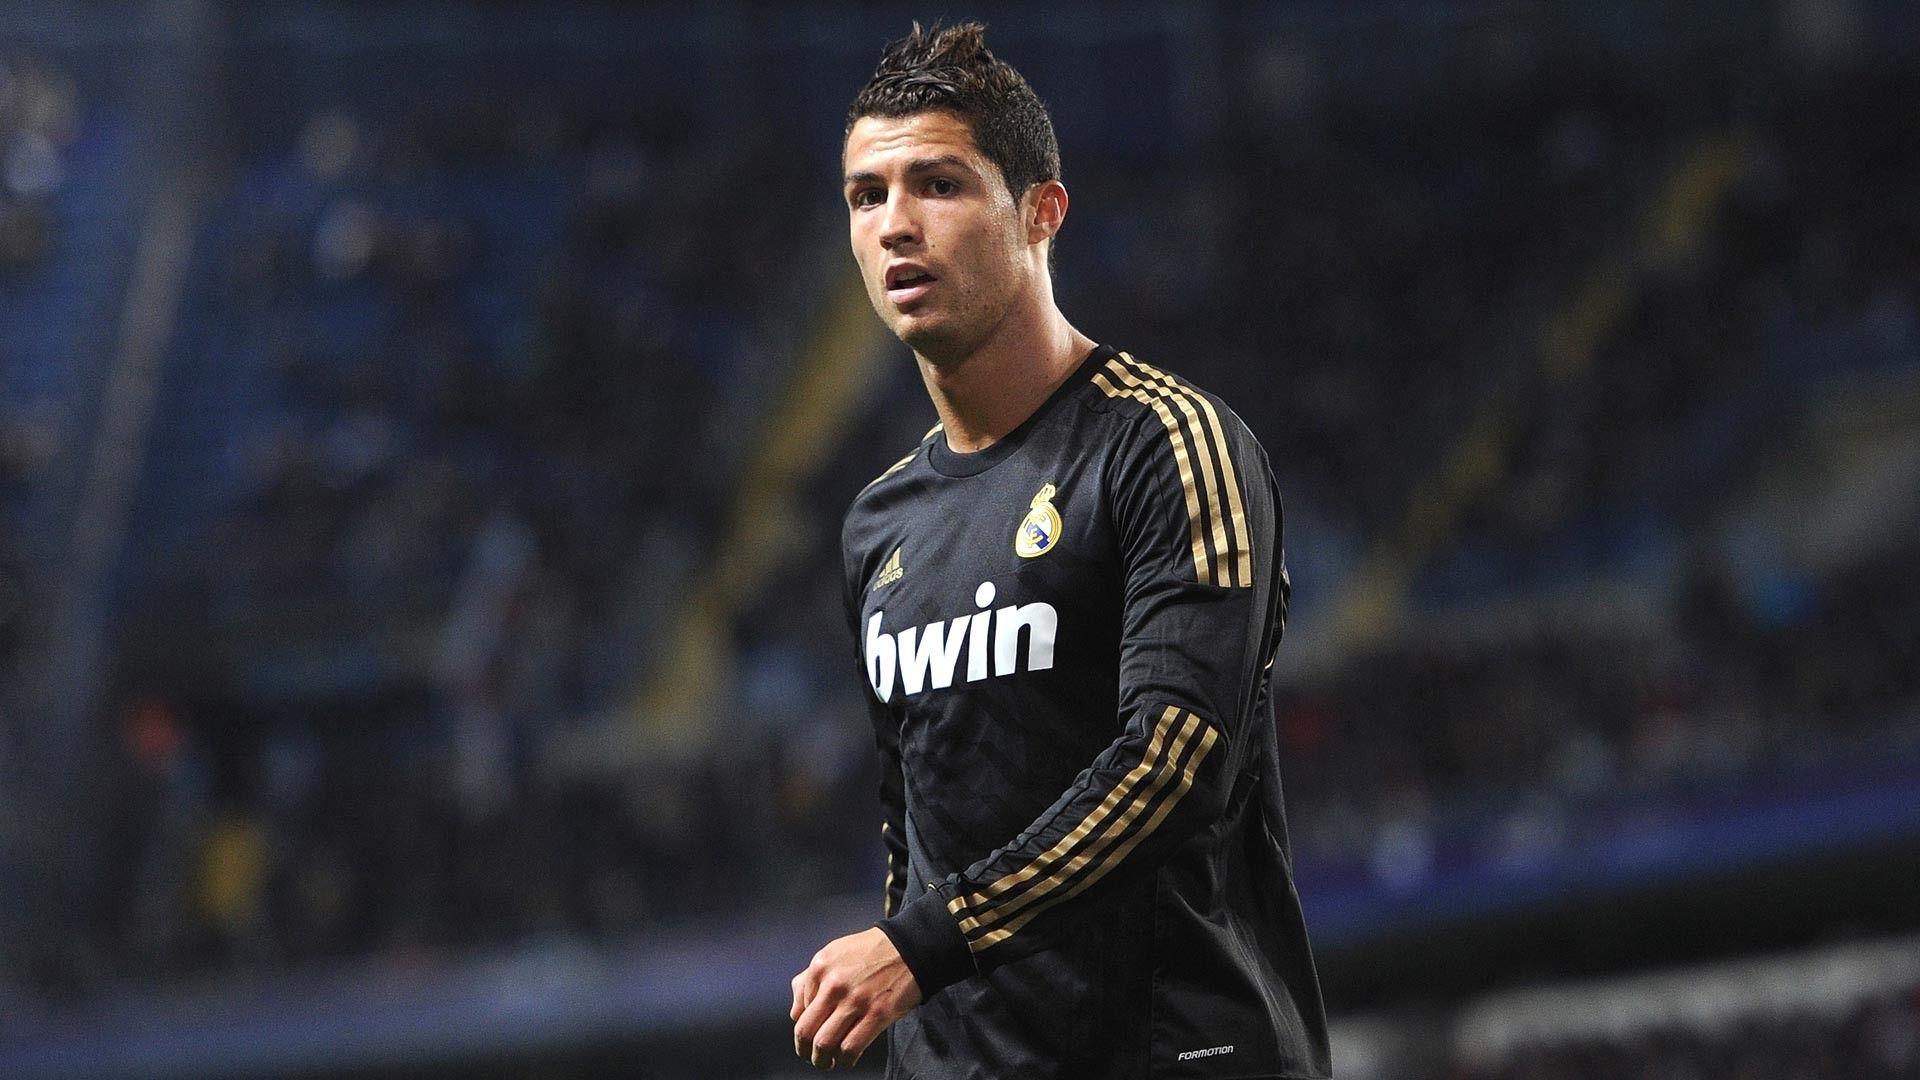 Cristiano Ronaldo Wallpaper 1080p